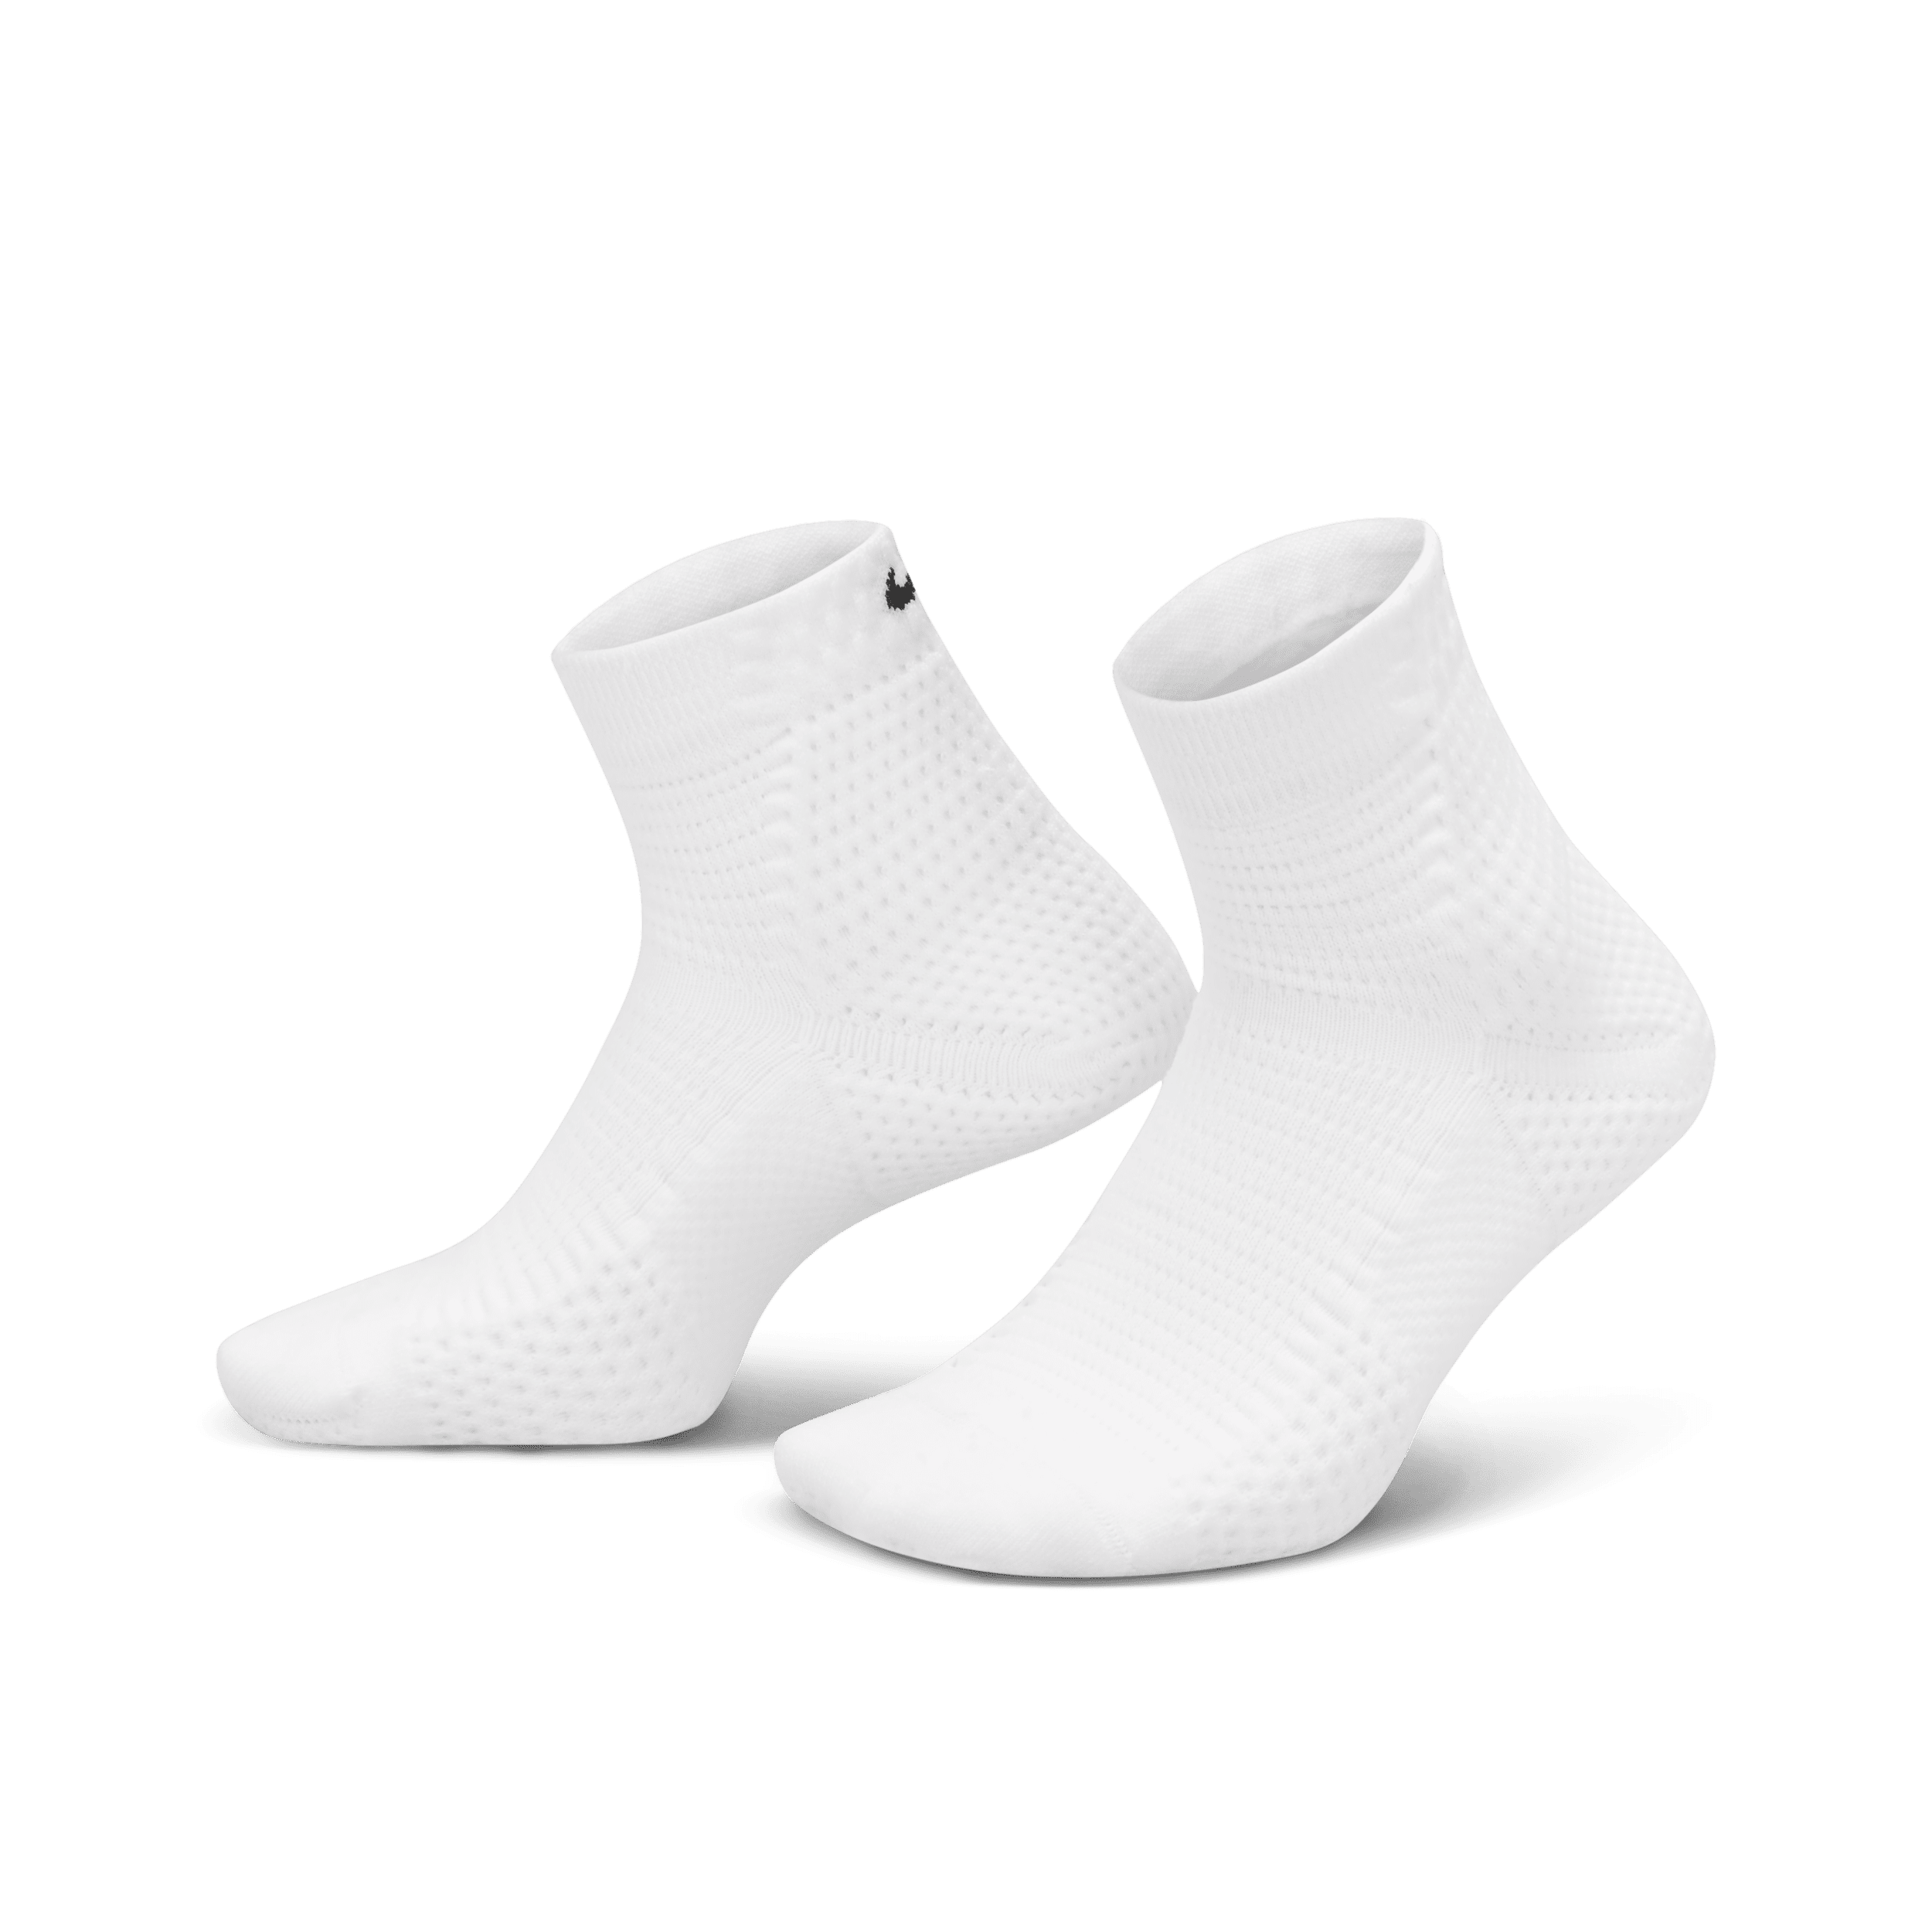 Calze ammortizzate alla caviglia Dri-FIT ADV Nike Unicorn (1 paio) - Bianco